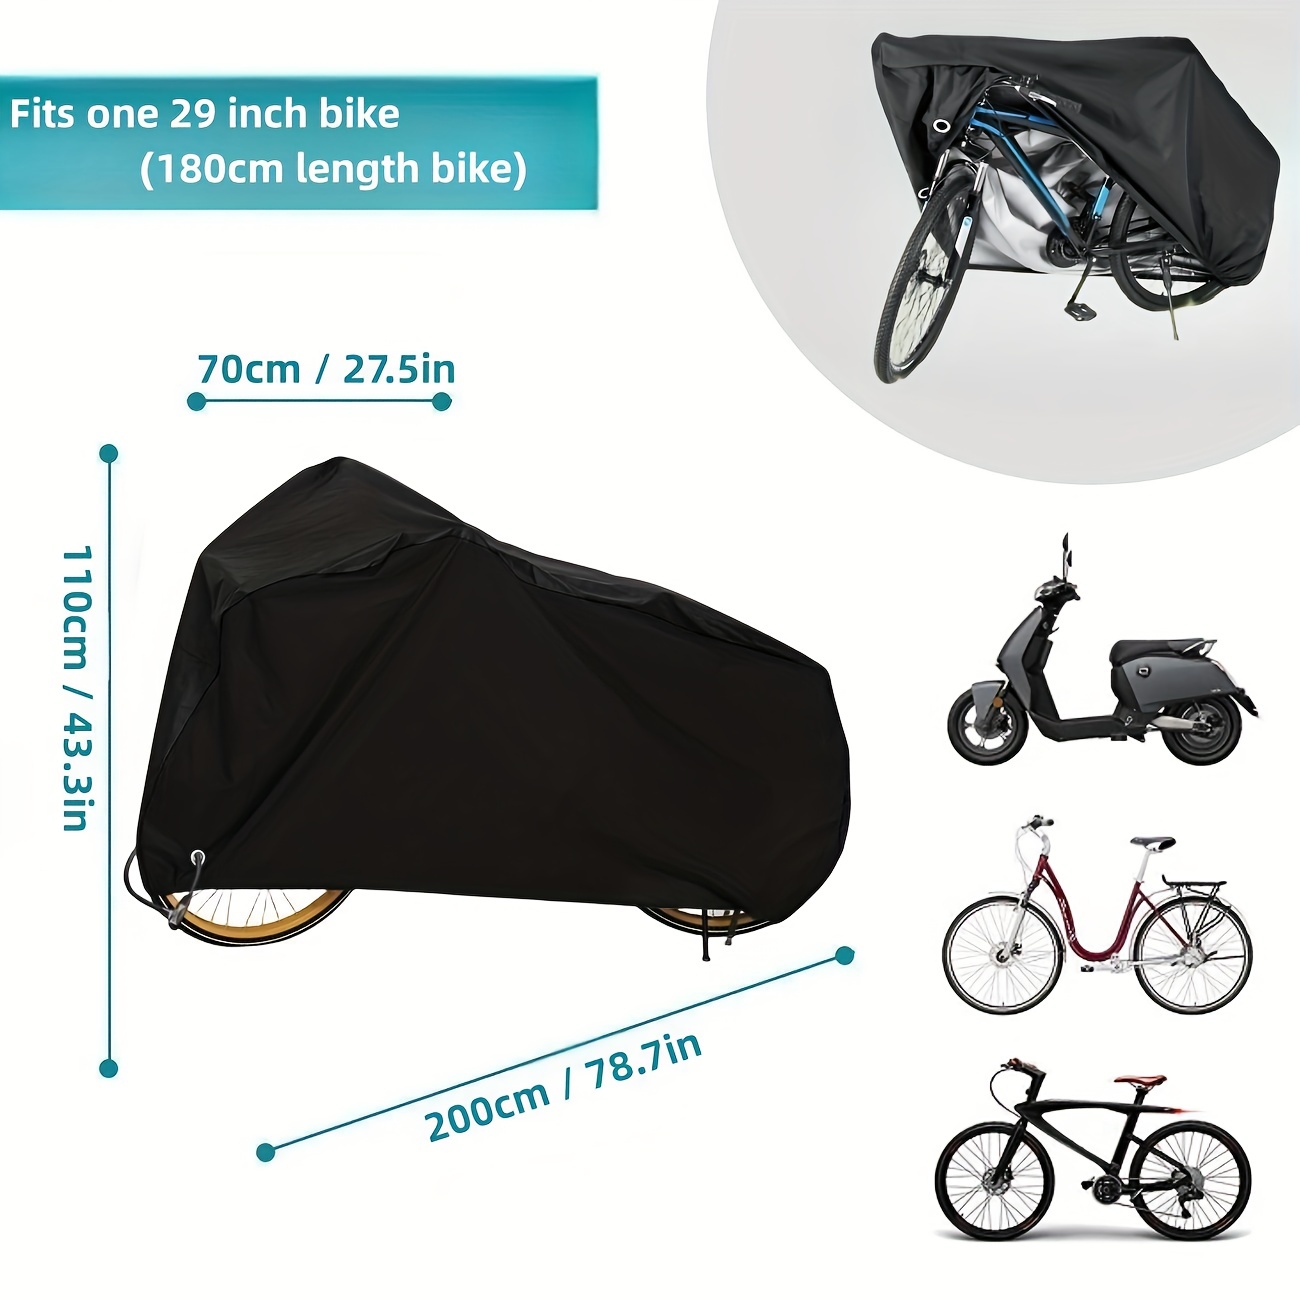  Szblnsm Funda de bicicleta para 1, 2 o 3 bicicletas al aire  libre, resistente material Ripstop 420D, ofrece una protección constante  para todo tipo de bicicletas durante las 4 estaciones 